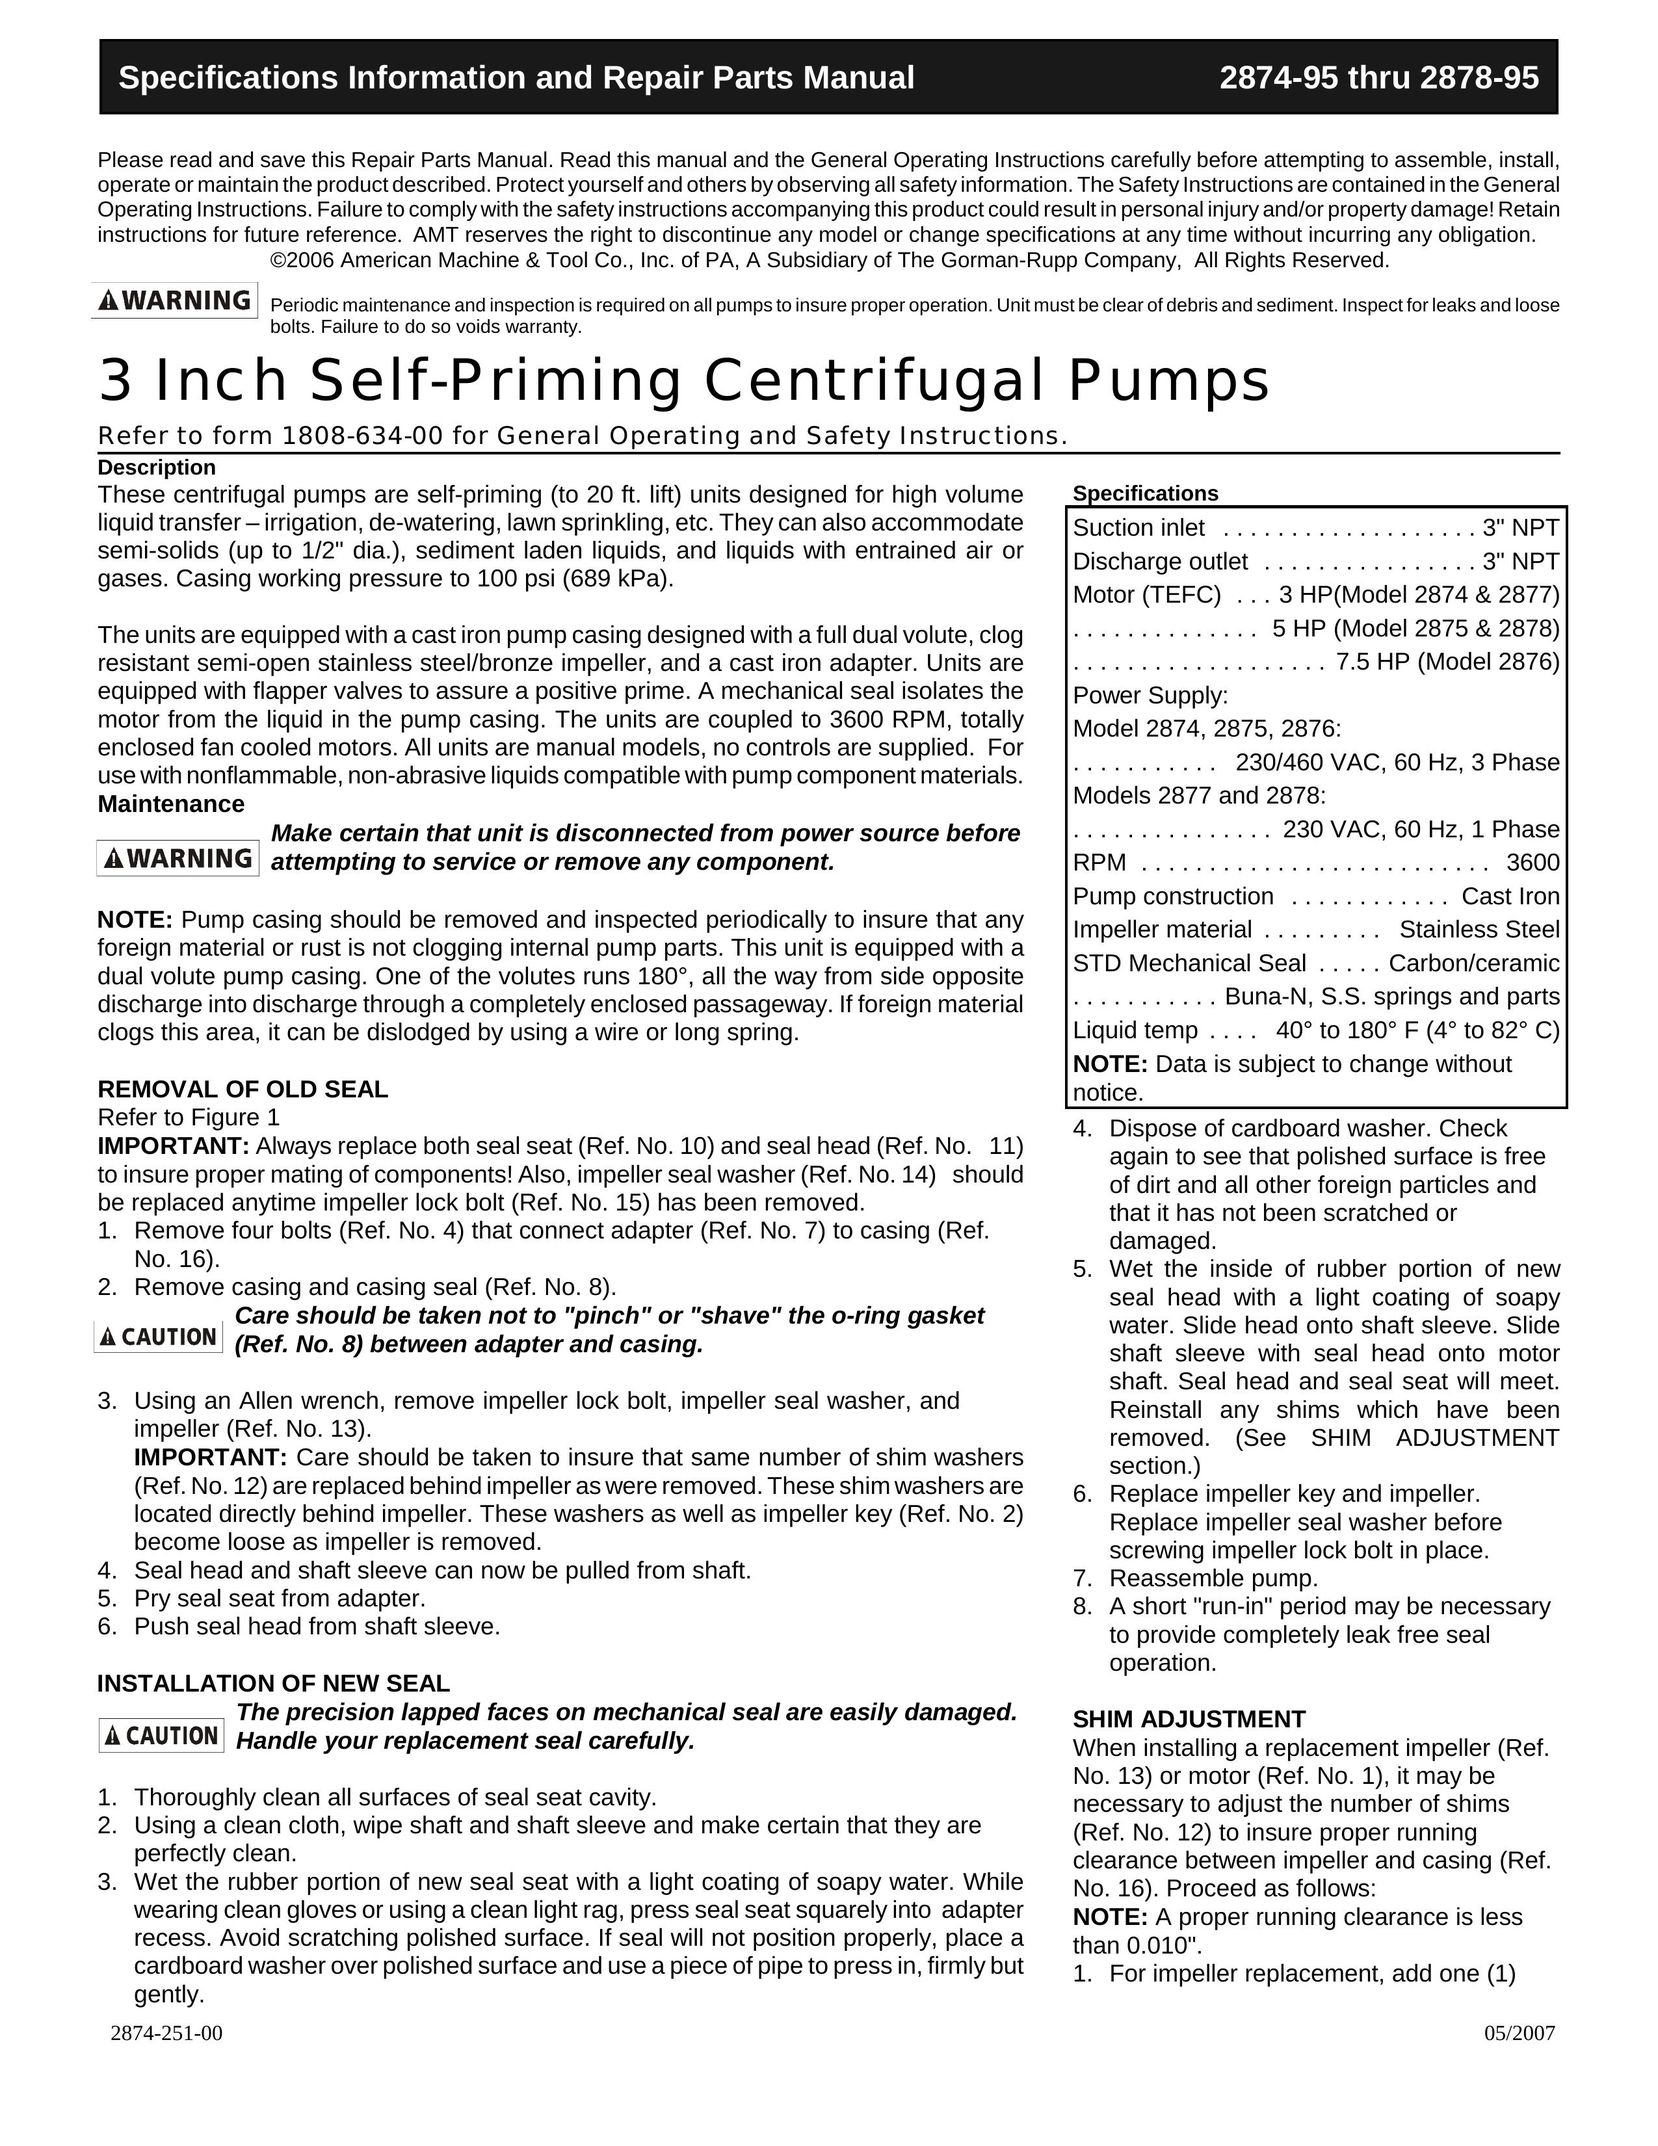 HP (Hewlett-Packard) 2875 Water Pump User Manual